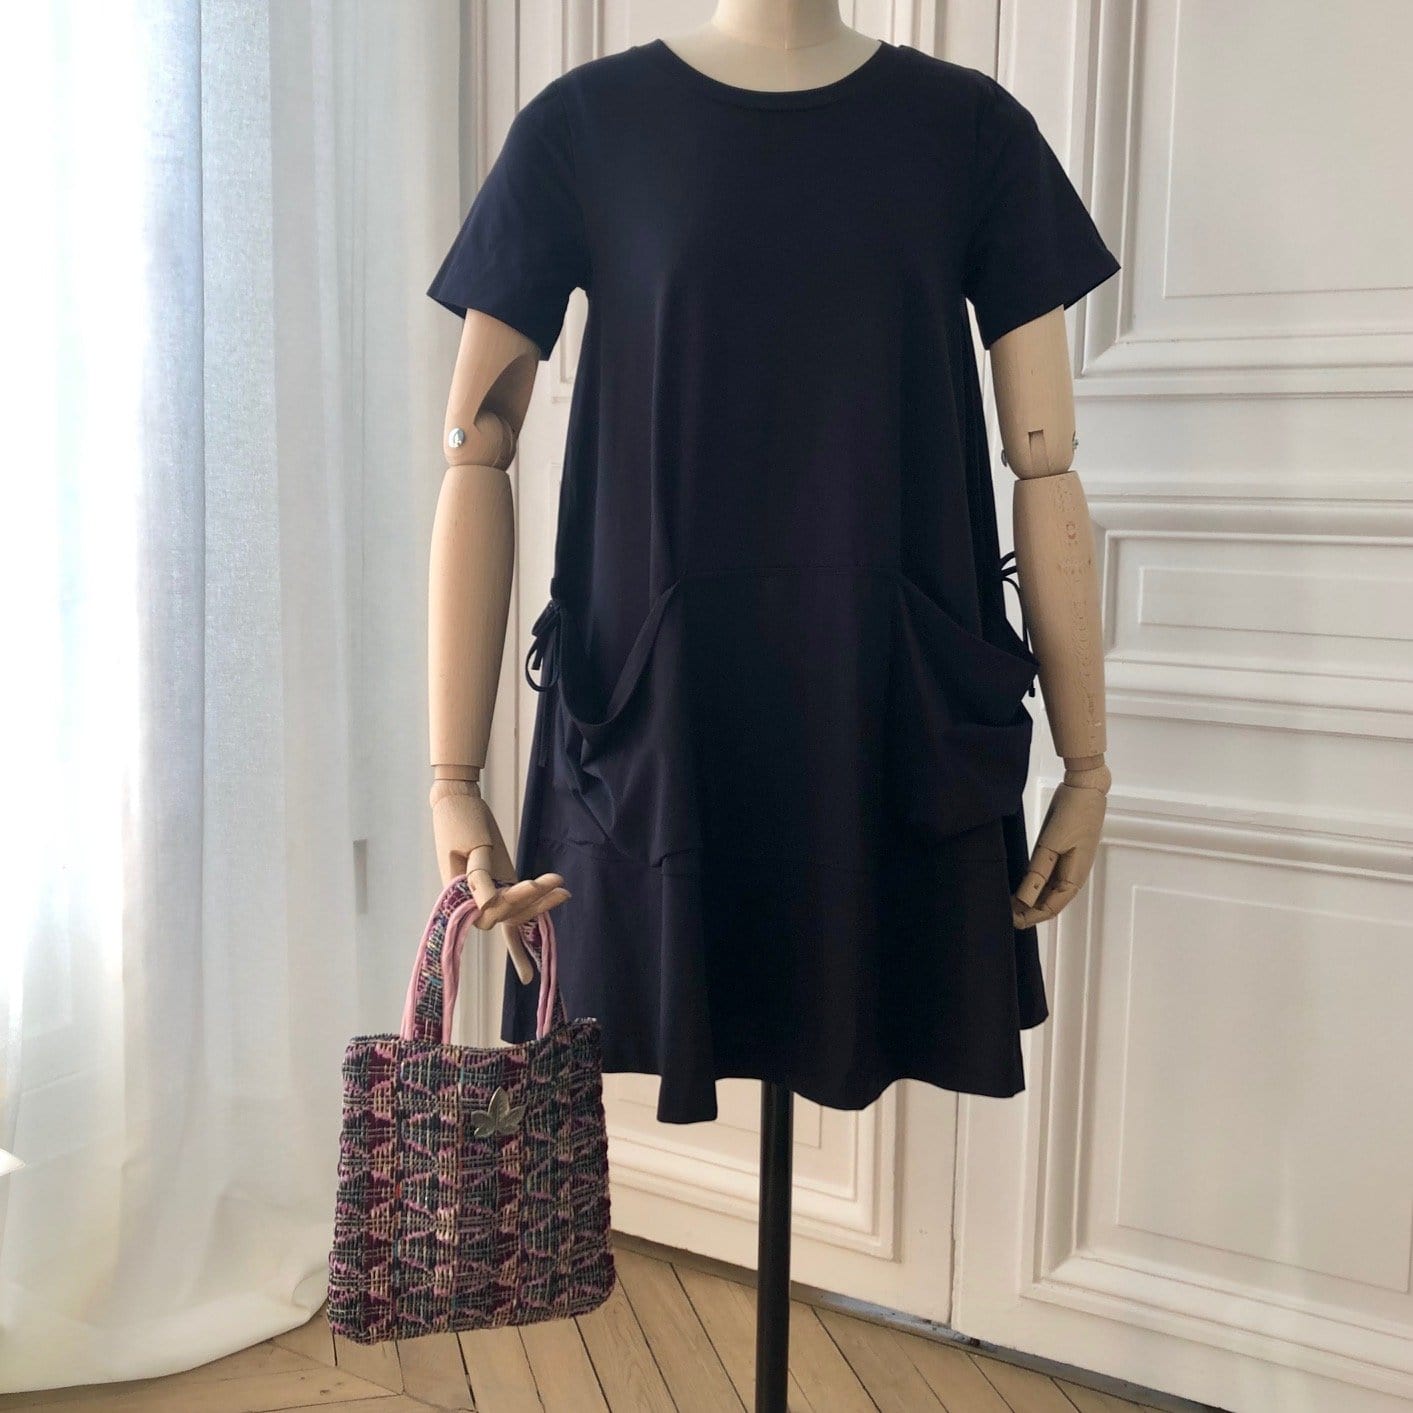 Mini sac Bienvenue en tweed lilas, rose et marine tissé et fabriqué en France